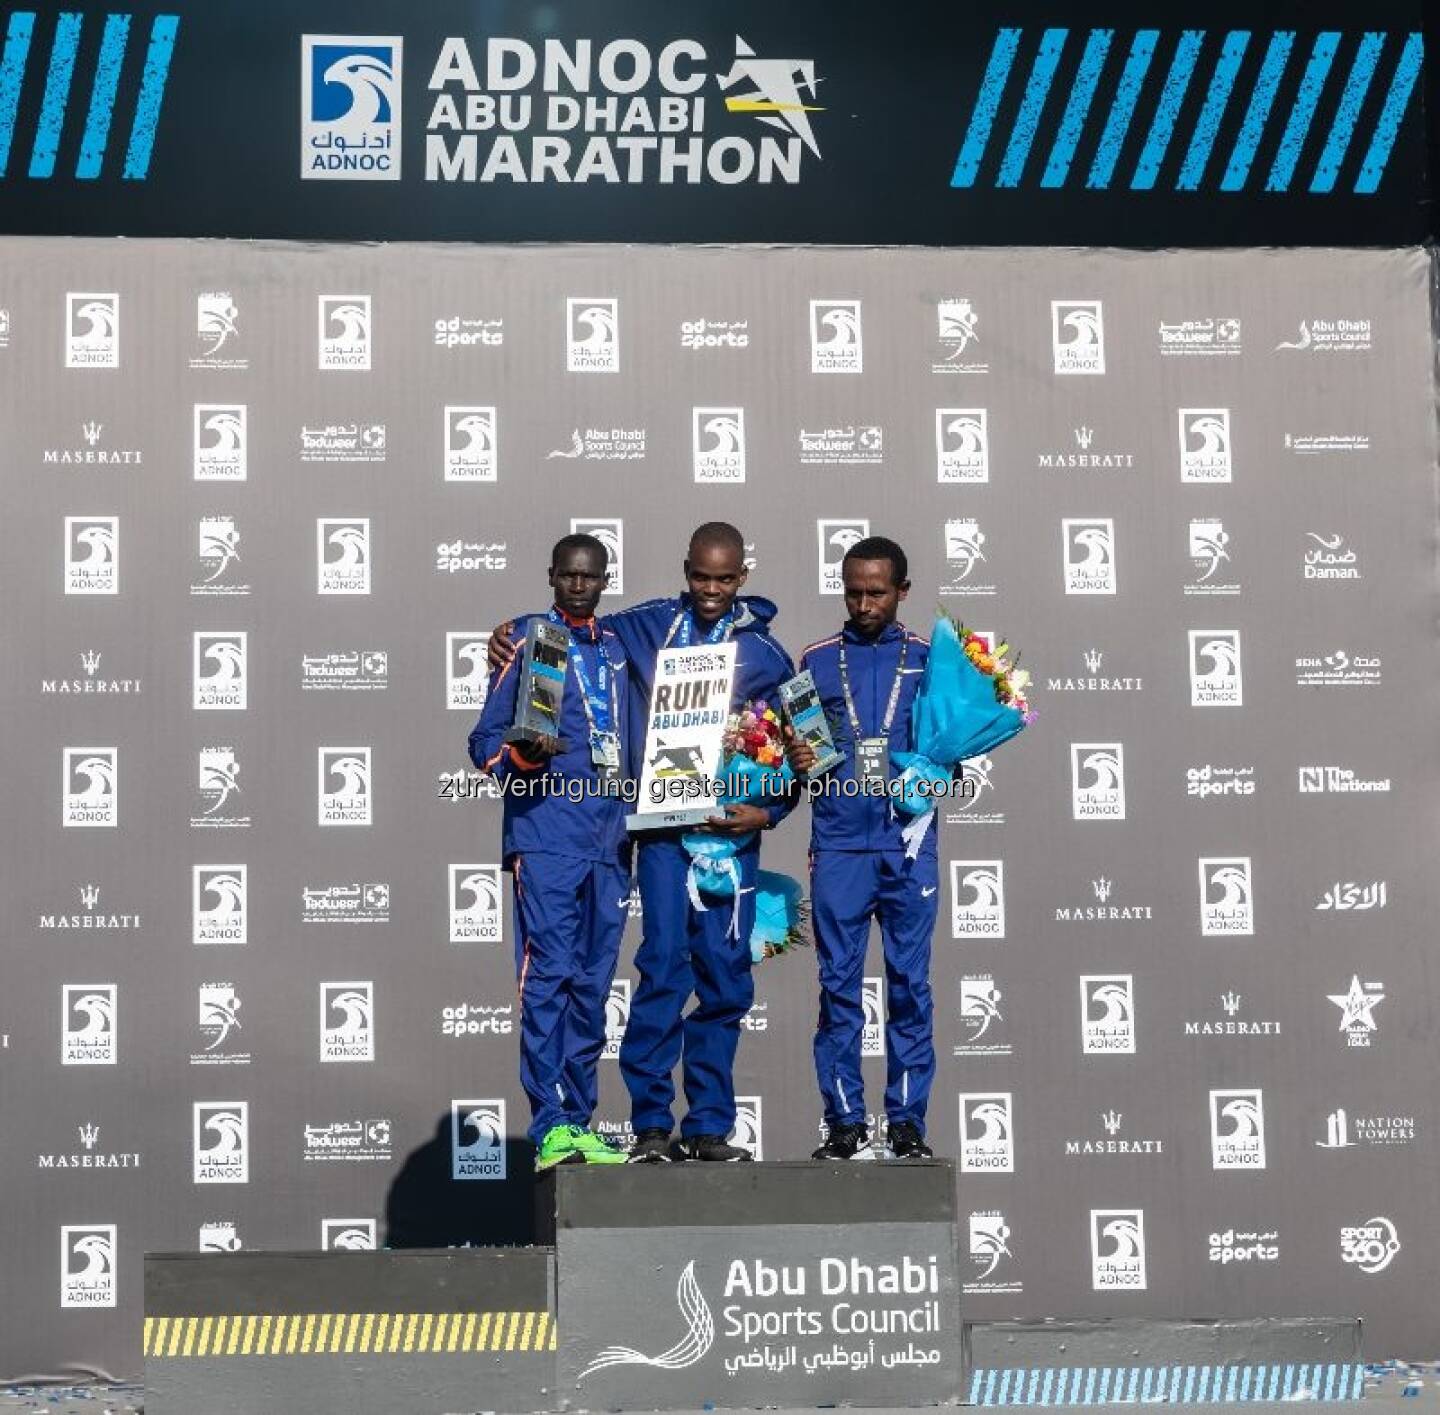 Die Preisverleihung (Männerkategorie) der zweiten Ausgabe des ADNOC Abu Dhabi Marathons